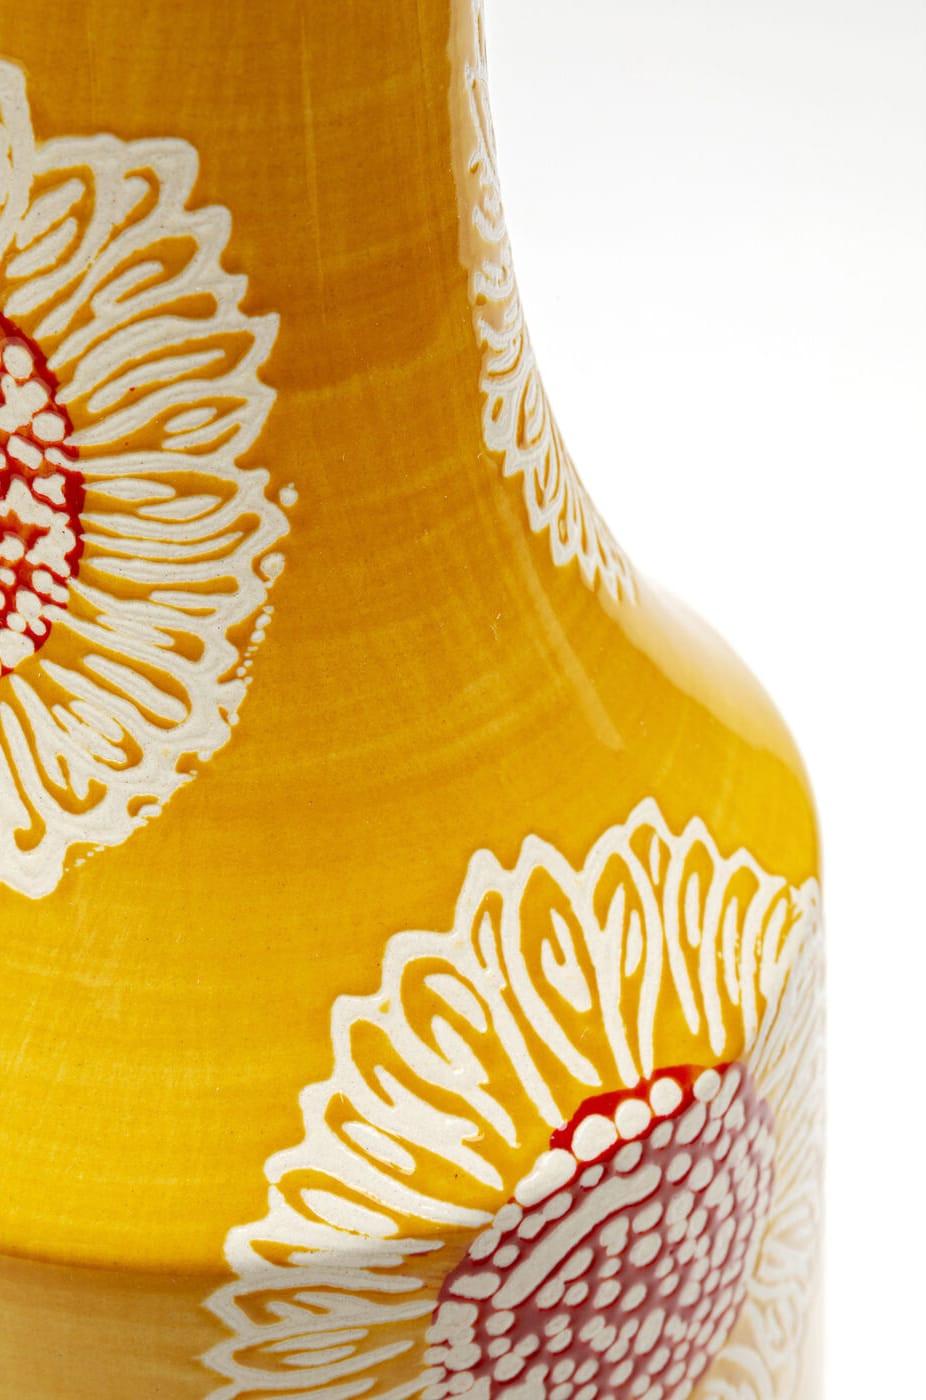 KARE Design Vase Big Bloom gelb 38  